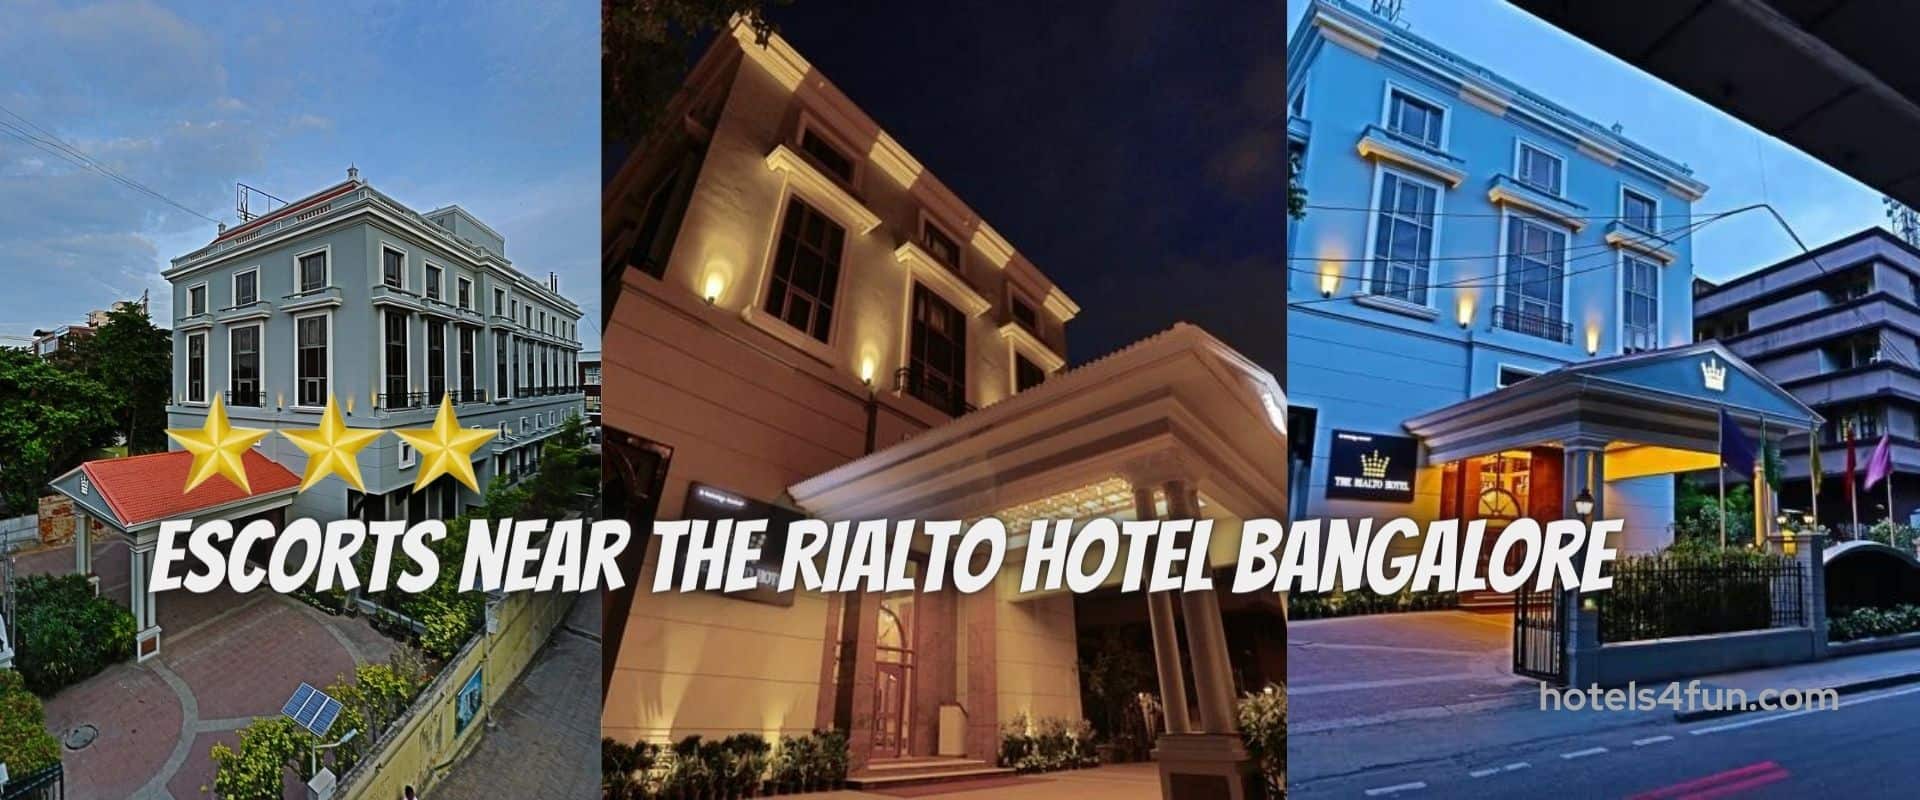 The Rialto Hotel Bangalore